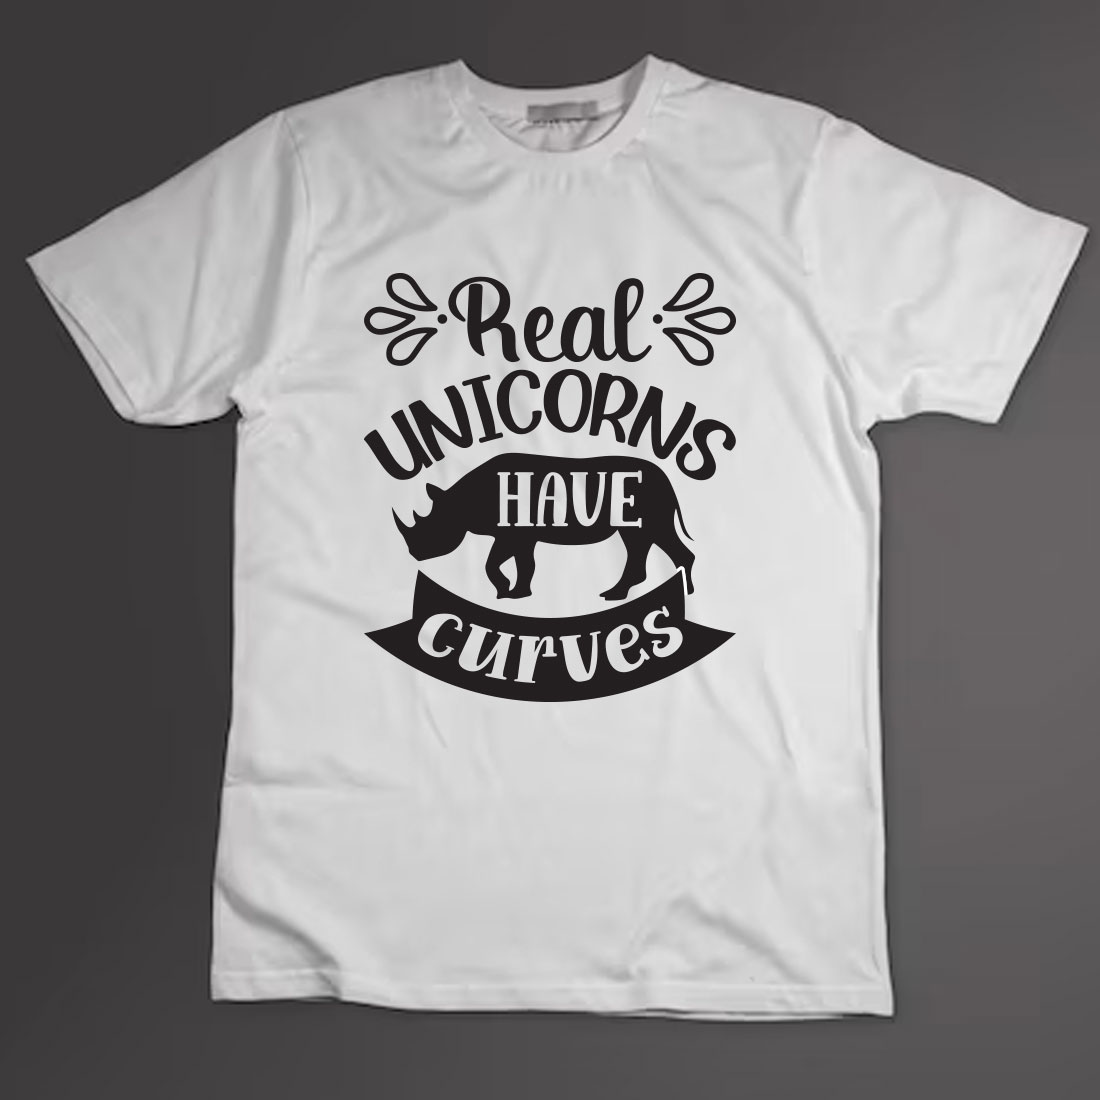 Unicorn T-shirt Design Bundle Vol-4 preview image.